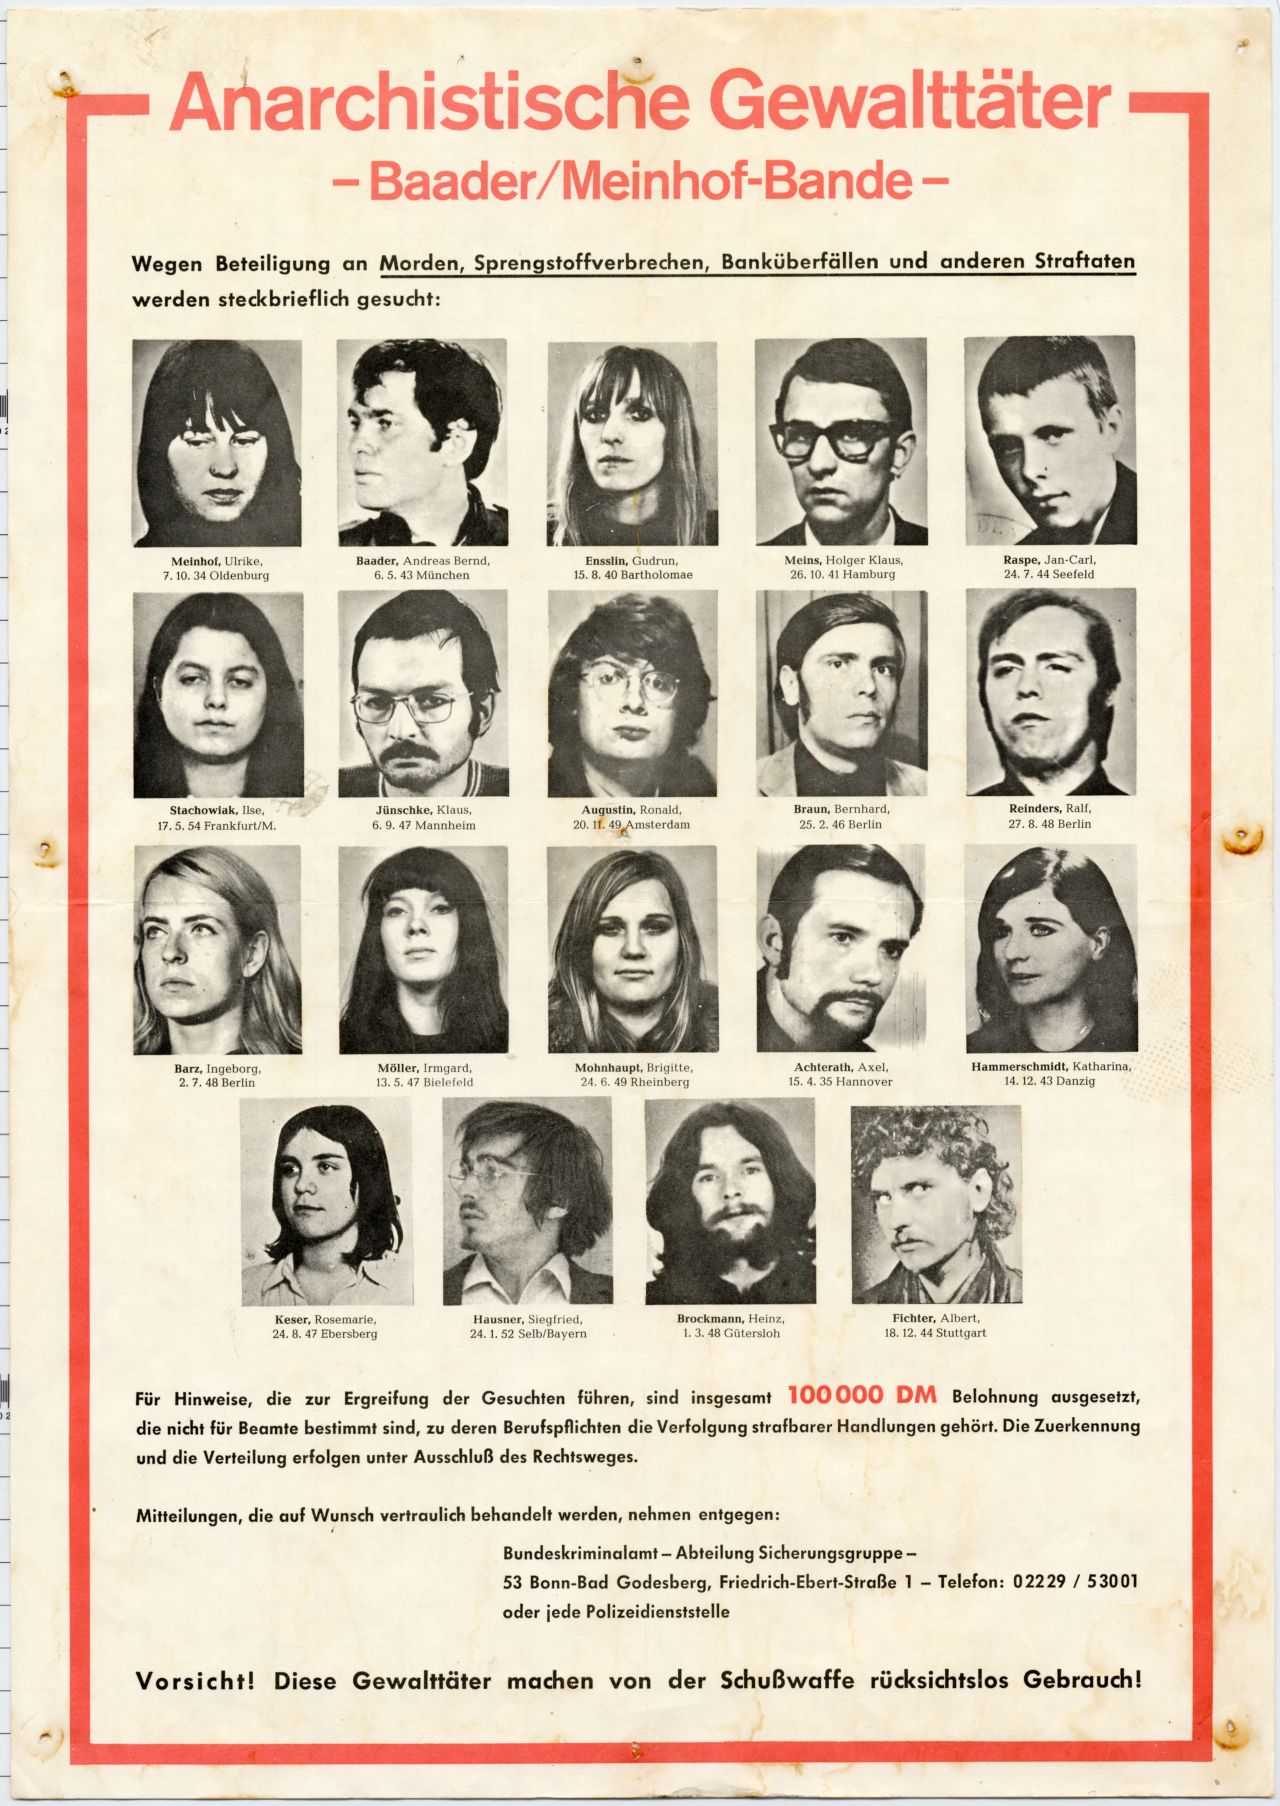 Rote Überschrift: Anarchistische Gewalttäter – Baader/Meinhof-Bande. Darunter 19 schwarz-weiß Porträts der steckbrieflich gesuchten Personen.